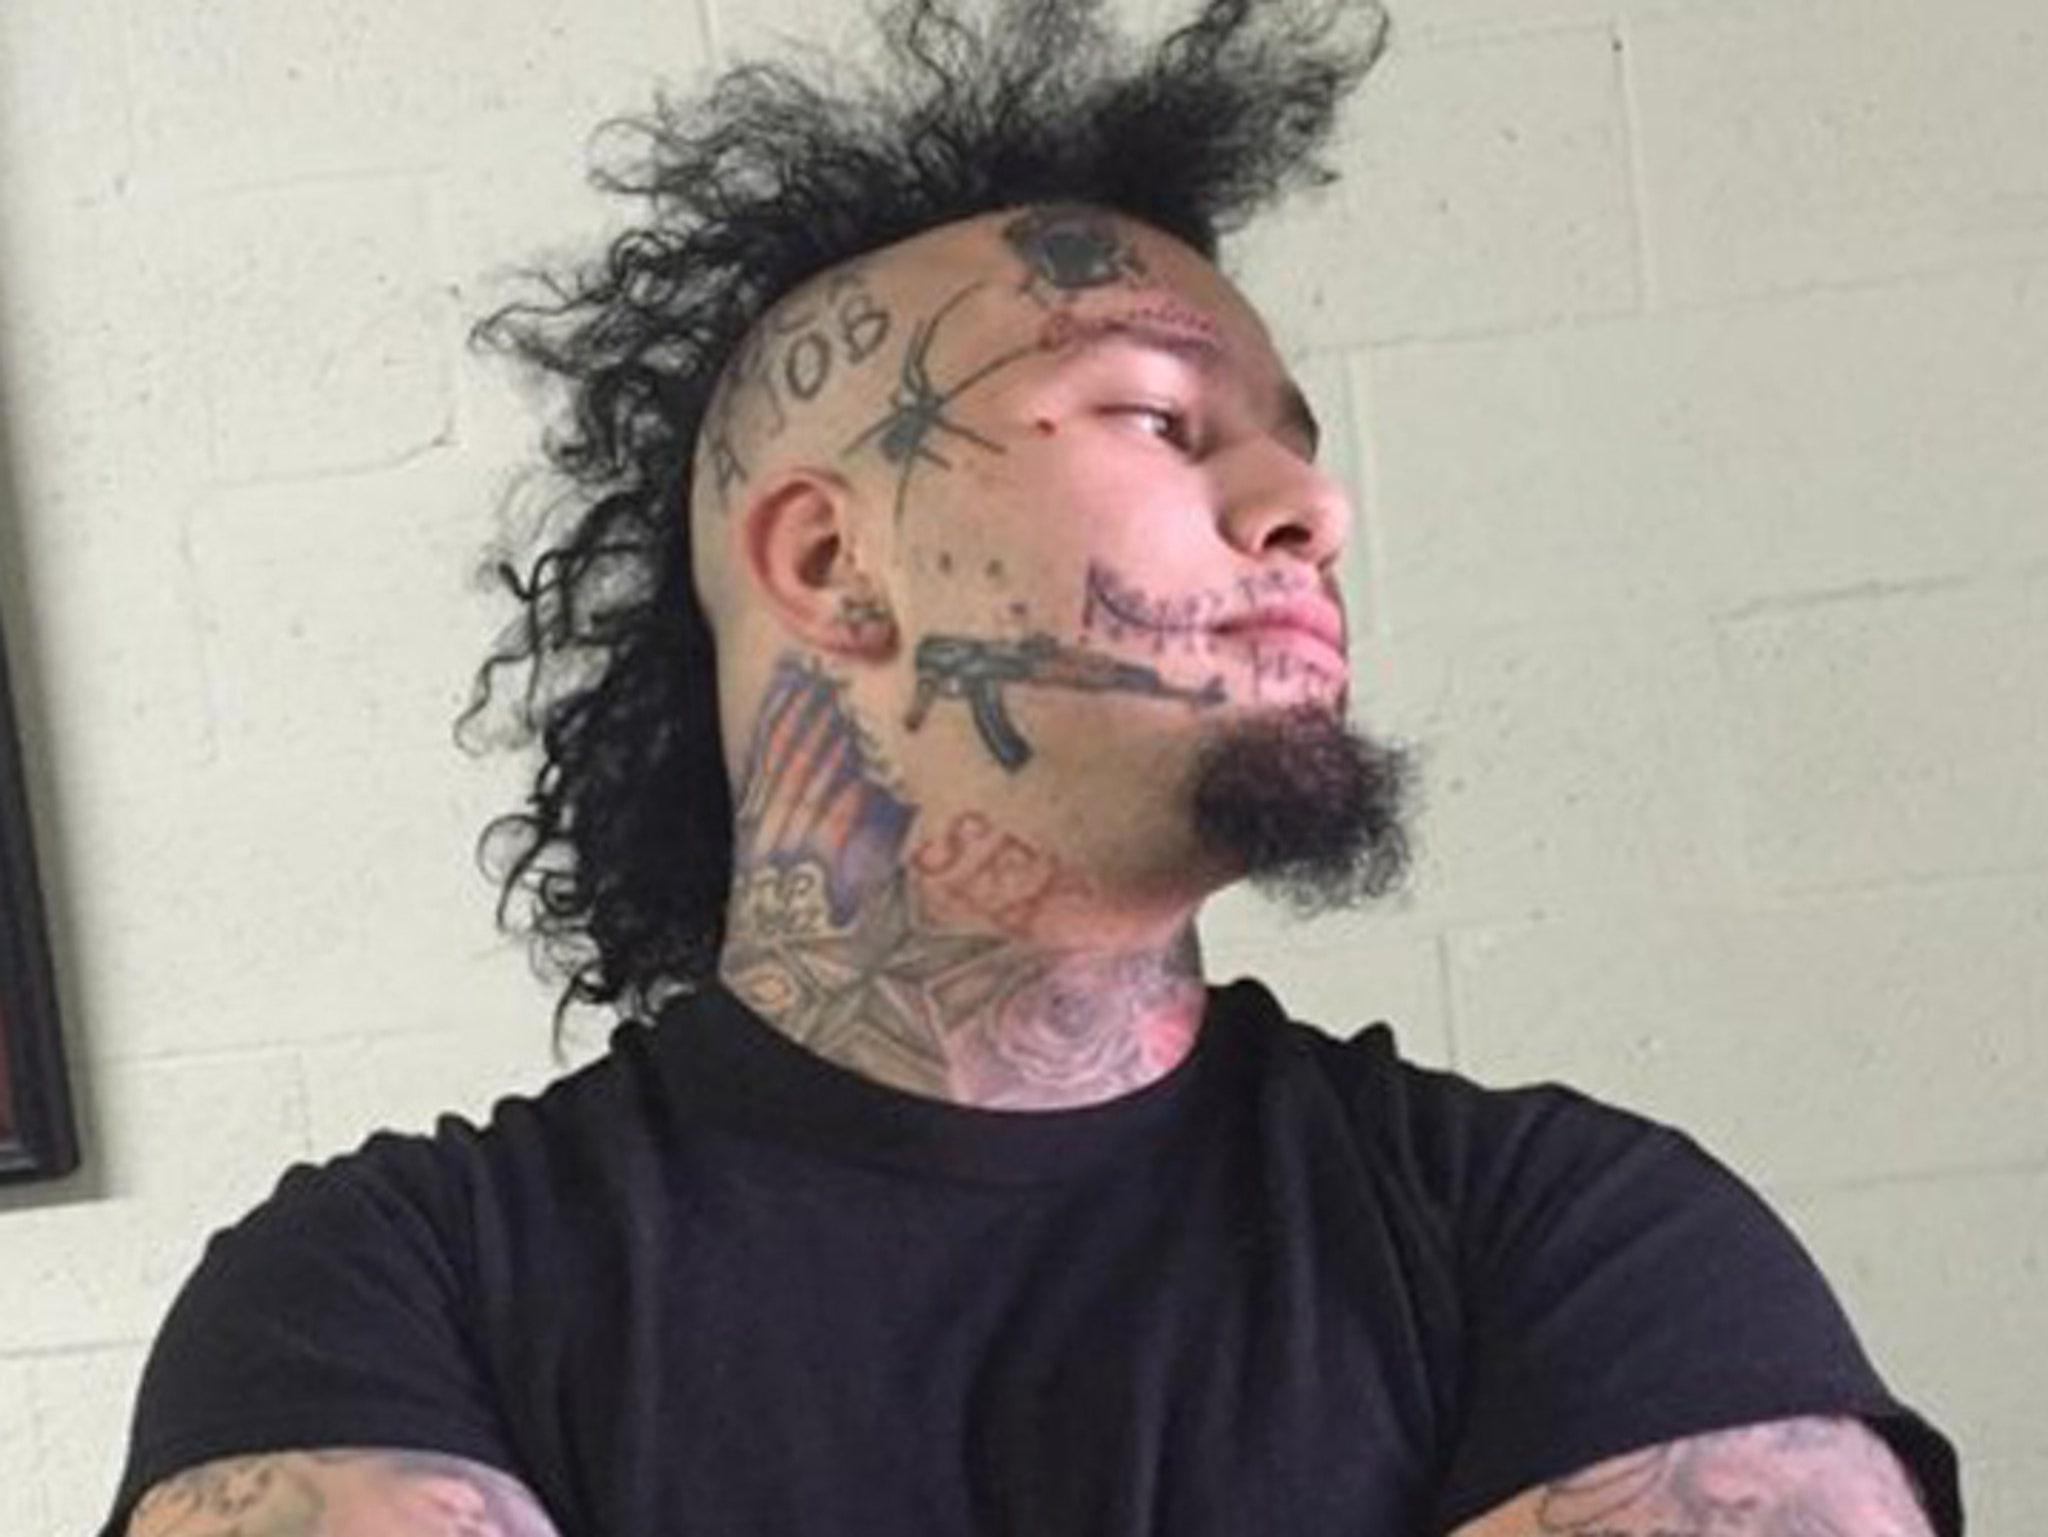 Rapper Stitches Gets a Brutal Face Tattoo